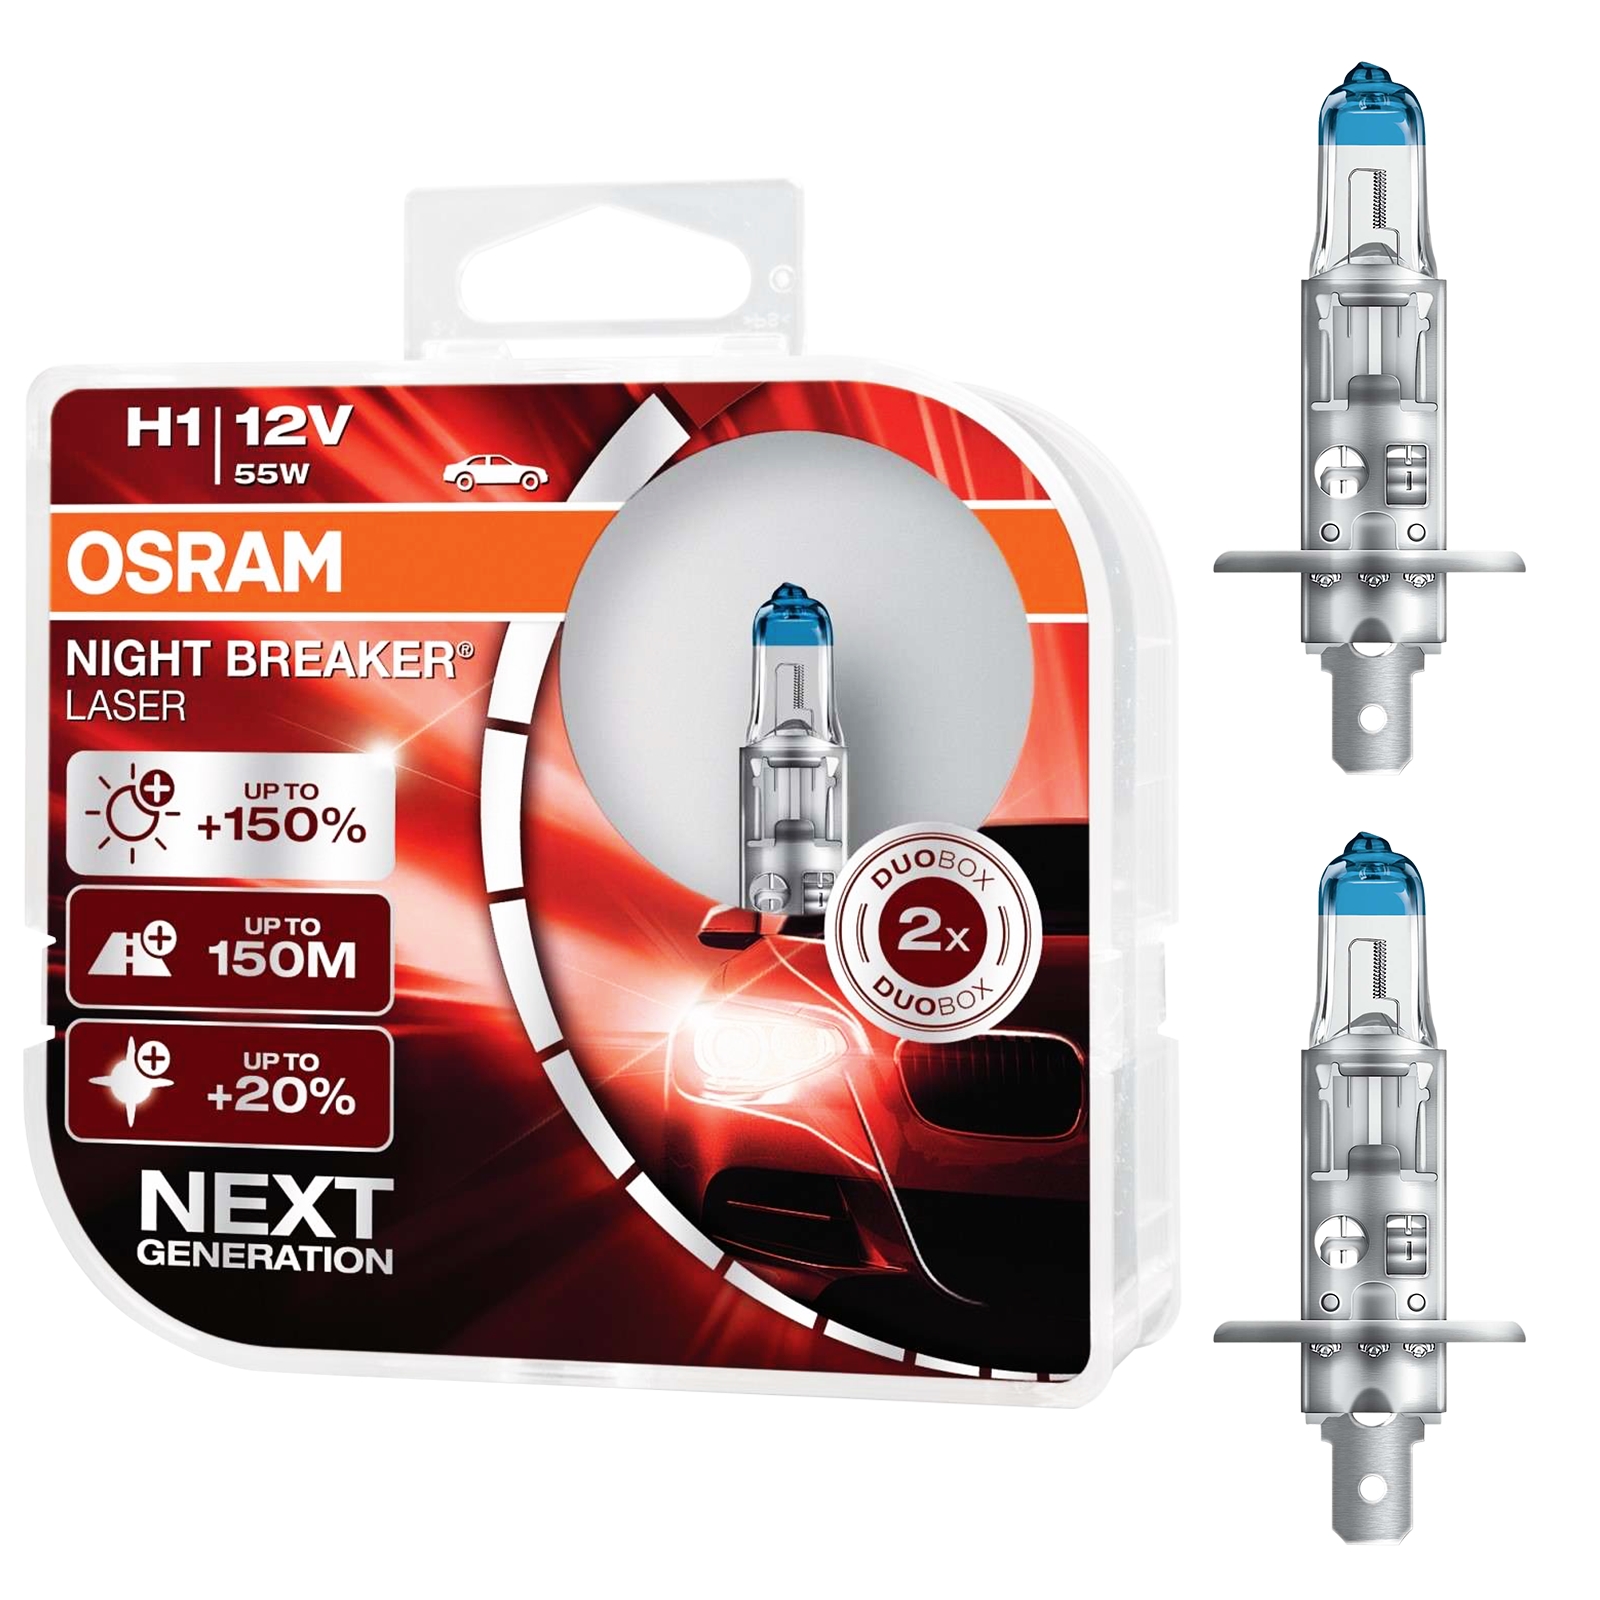 OSRAM H7 12V 55W 2 x Osram Standlicht W5W Glühbirne Glühlampe Autobirne Lampe 